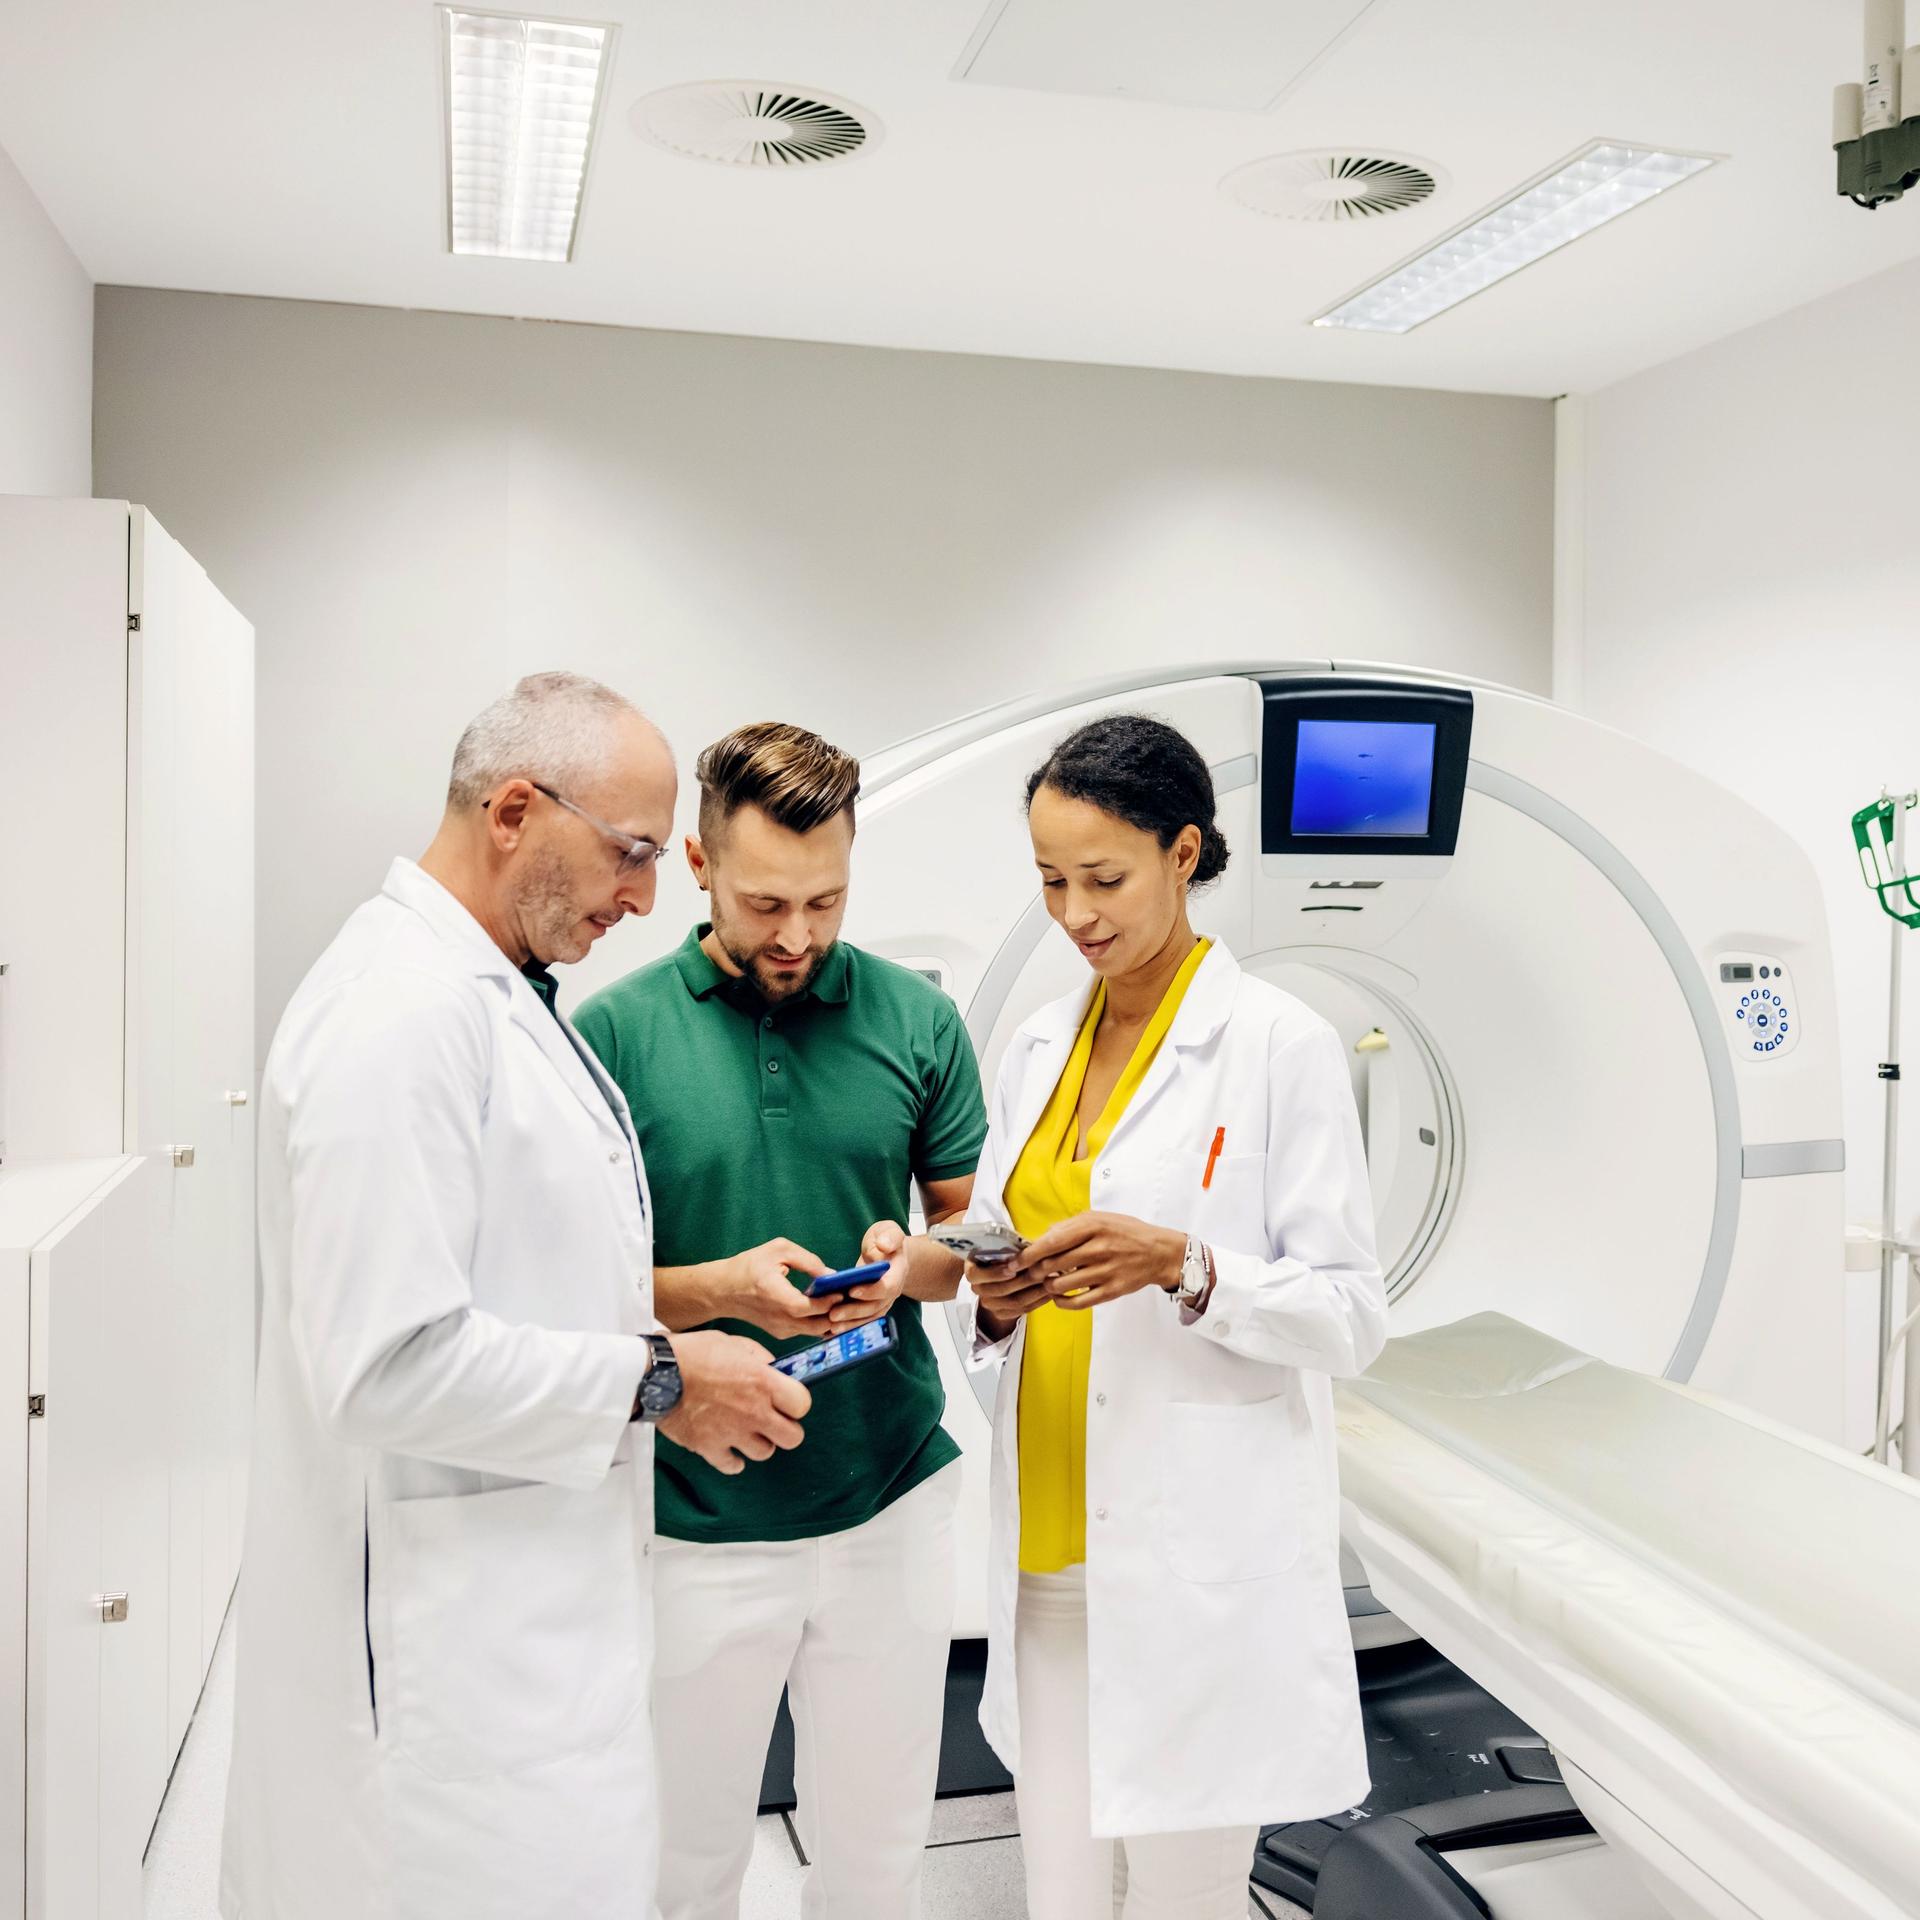 Eine Ärztin und ein Arzt besprechen einige Scandaten mit einem Mann und schauen auf ihre Smartphones, während sie in einem CT-Scanraum in einem Krankenhaus stehen.